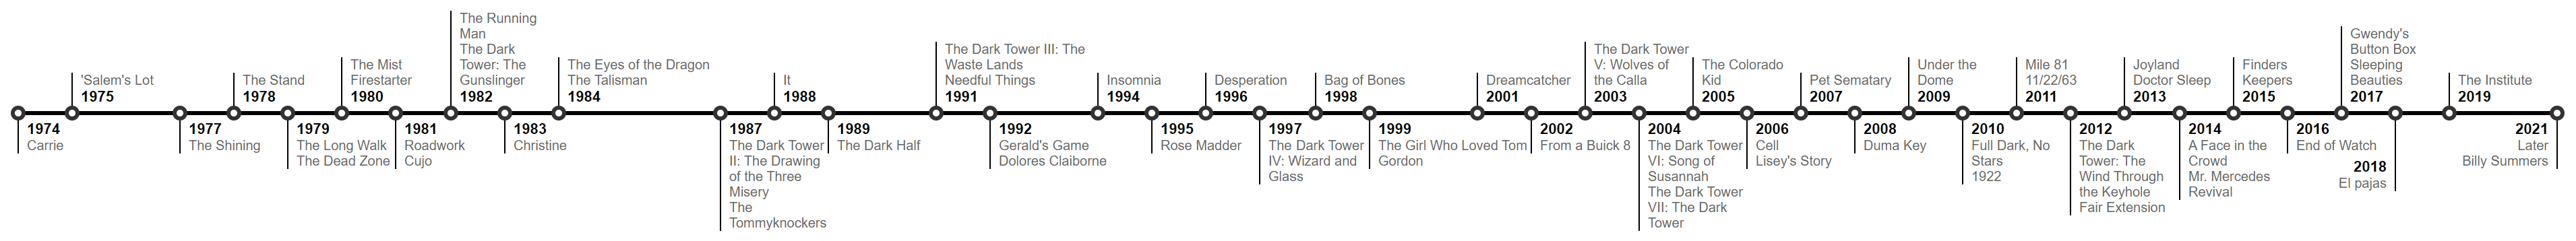 Stephen King novels published timeline